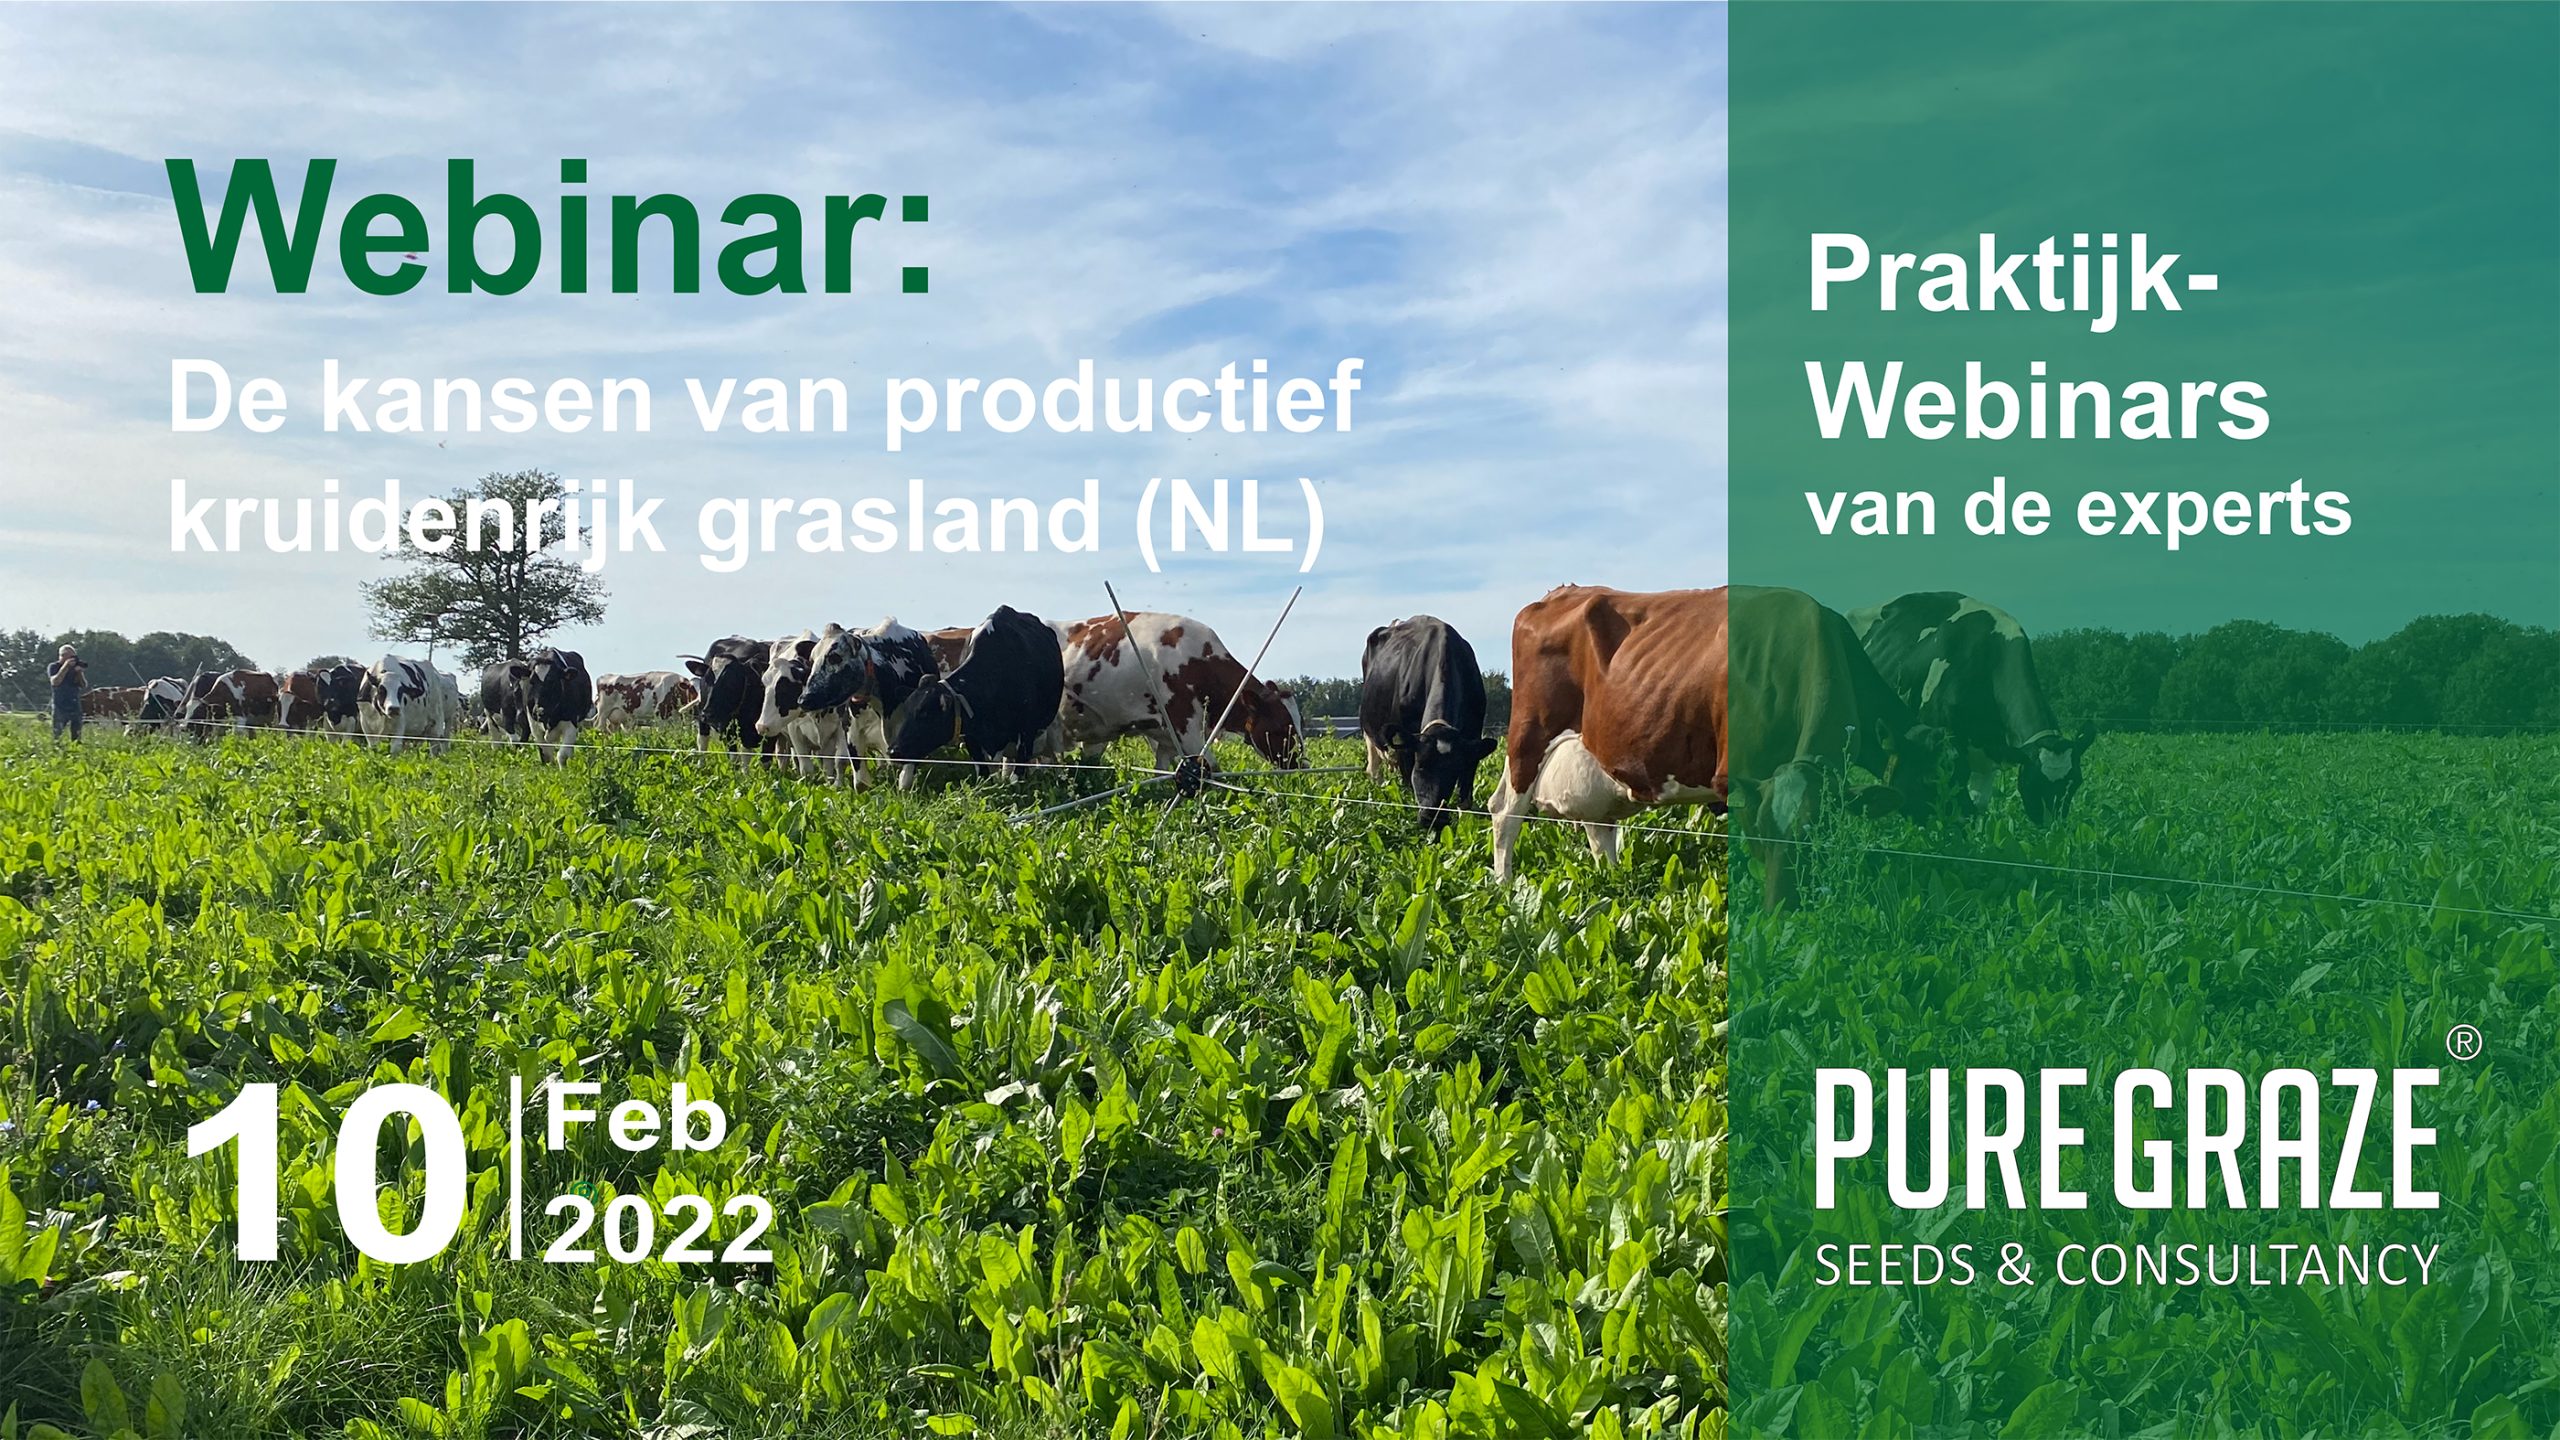 De kansen van productief kruidenrijk grasland (NL)